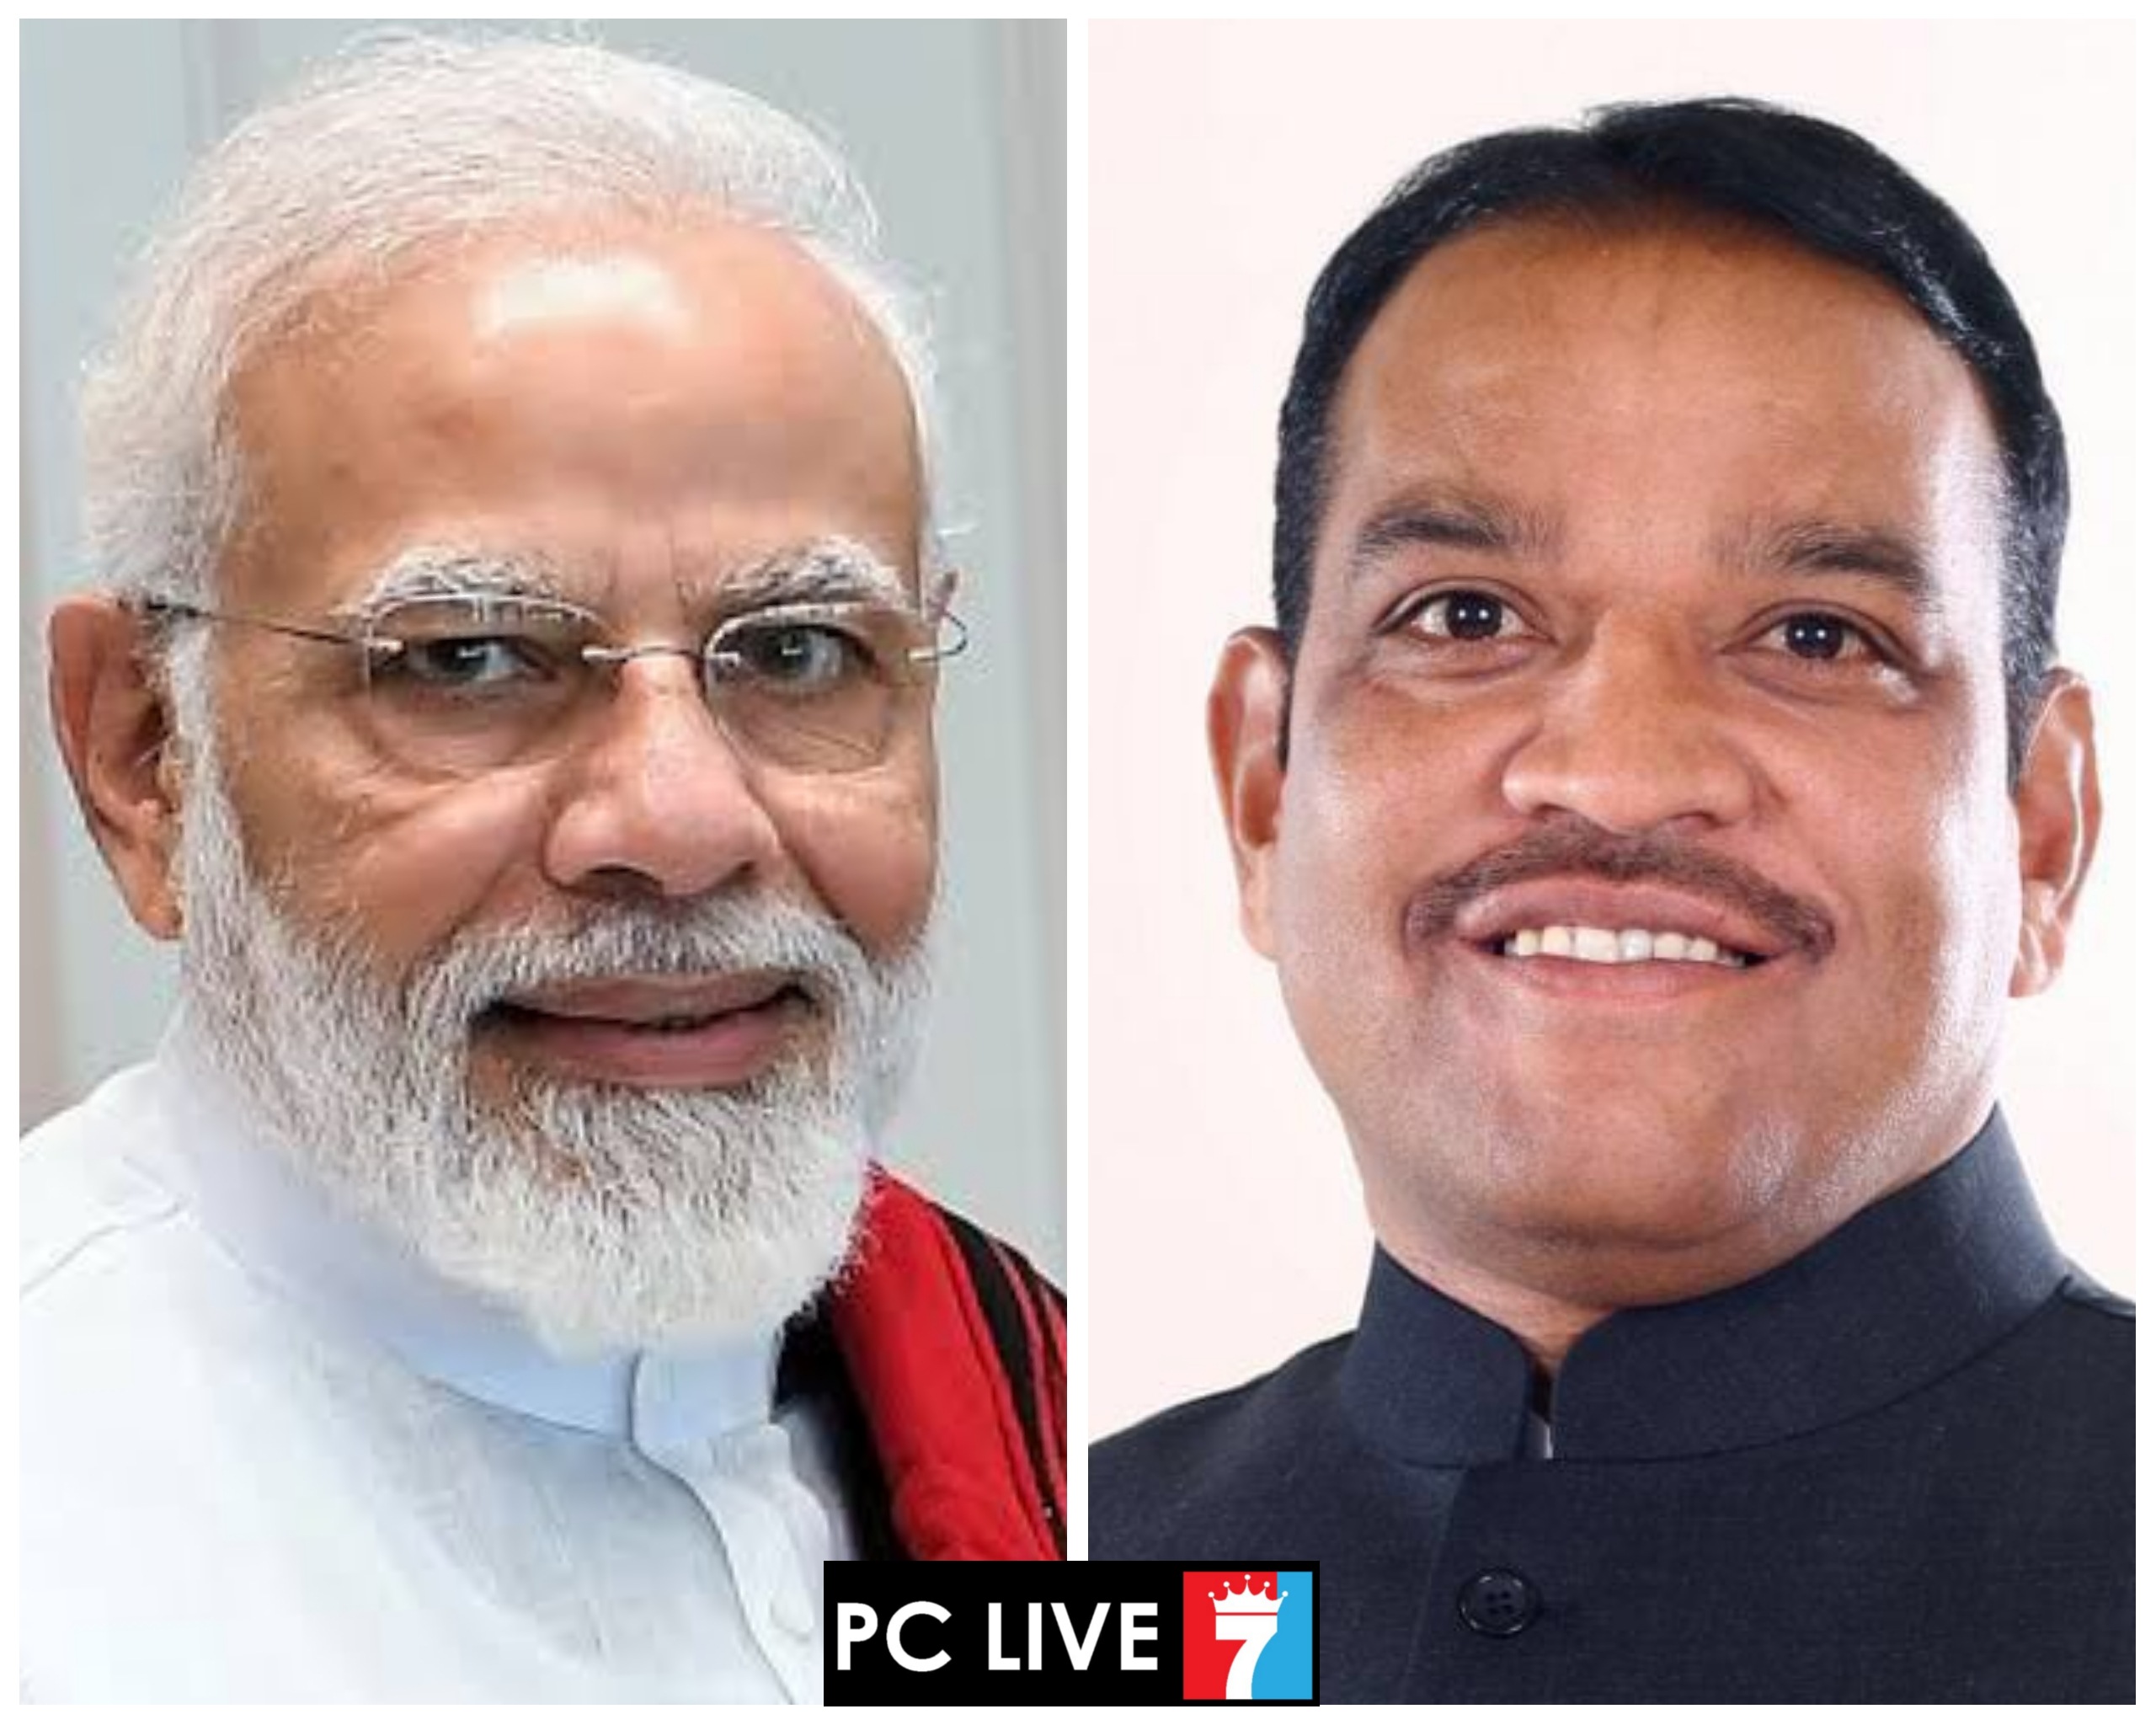 महाराष्ट्राला कोरोना प्रतिबंधक लसीचे डोस, रेमडेसिवीरचा कोटा वाढवा; खासदार श्रीरंग बारणे यांचे पंतप्रधान नरेंद्र मोदी यांना पत्र